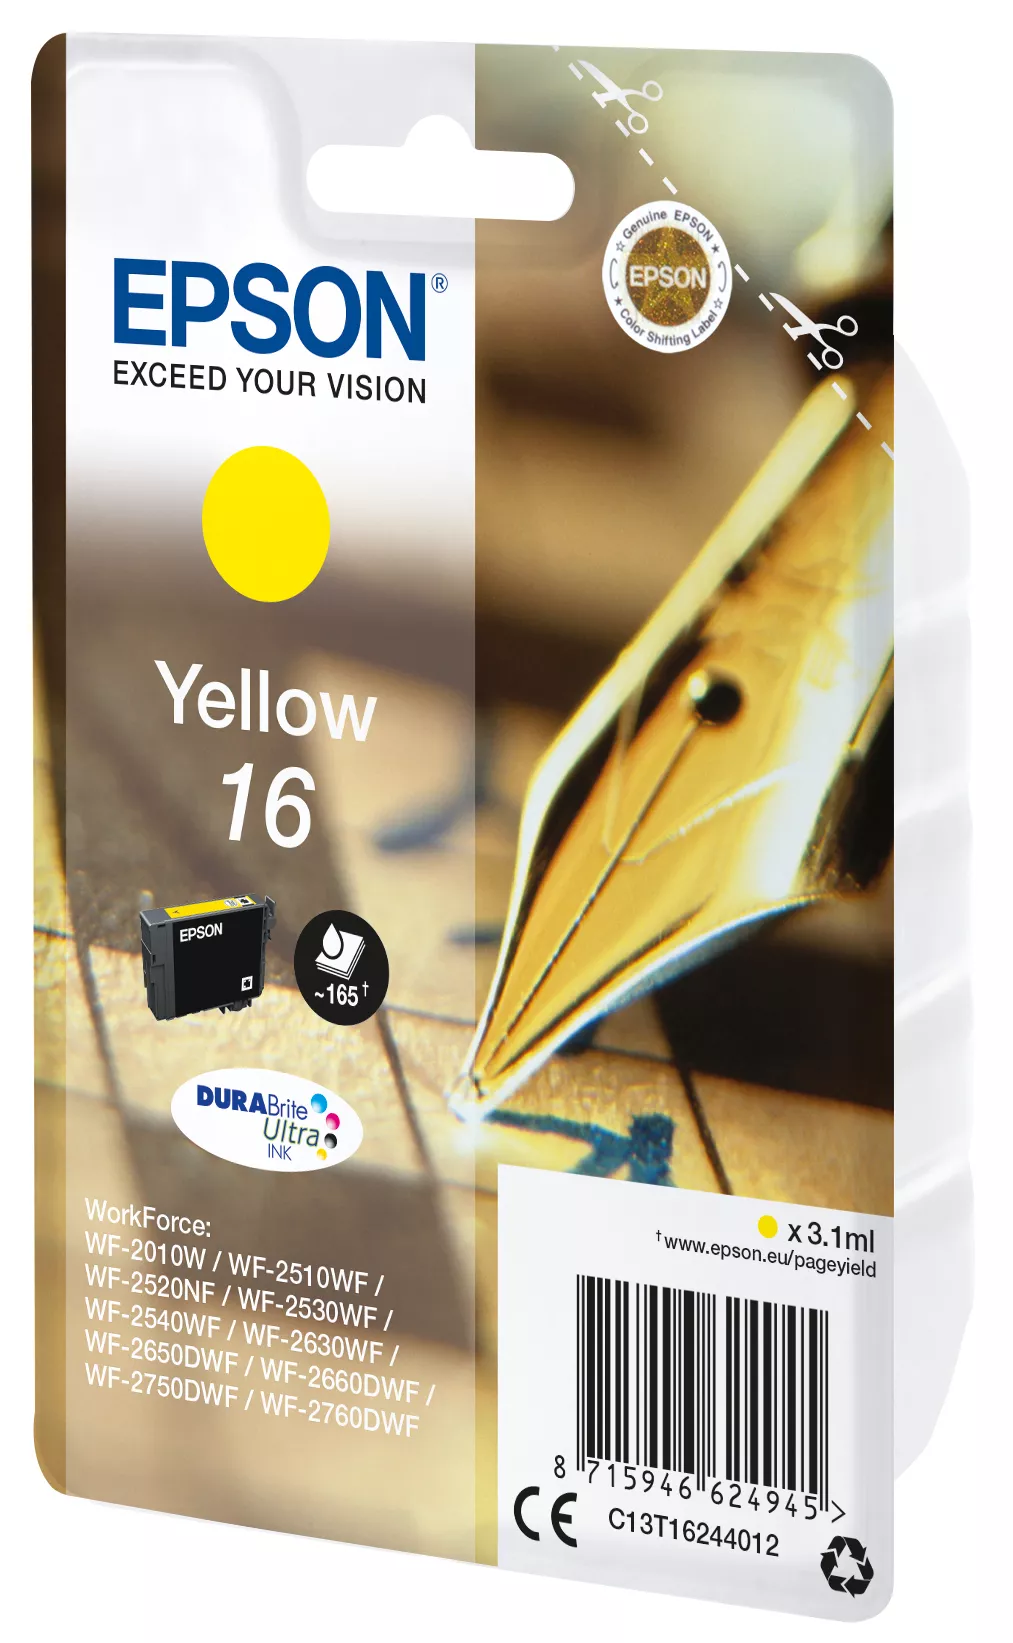 Vente EPSON 16 cartouche dencre jaune capacité standard 3.1ml Epson au meilleur prix - visuel 2